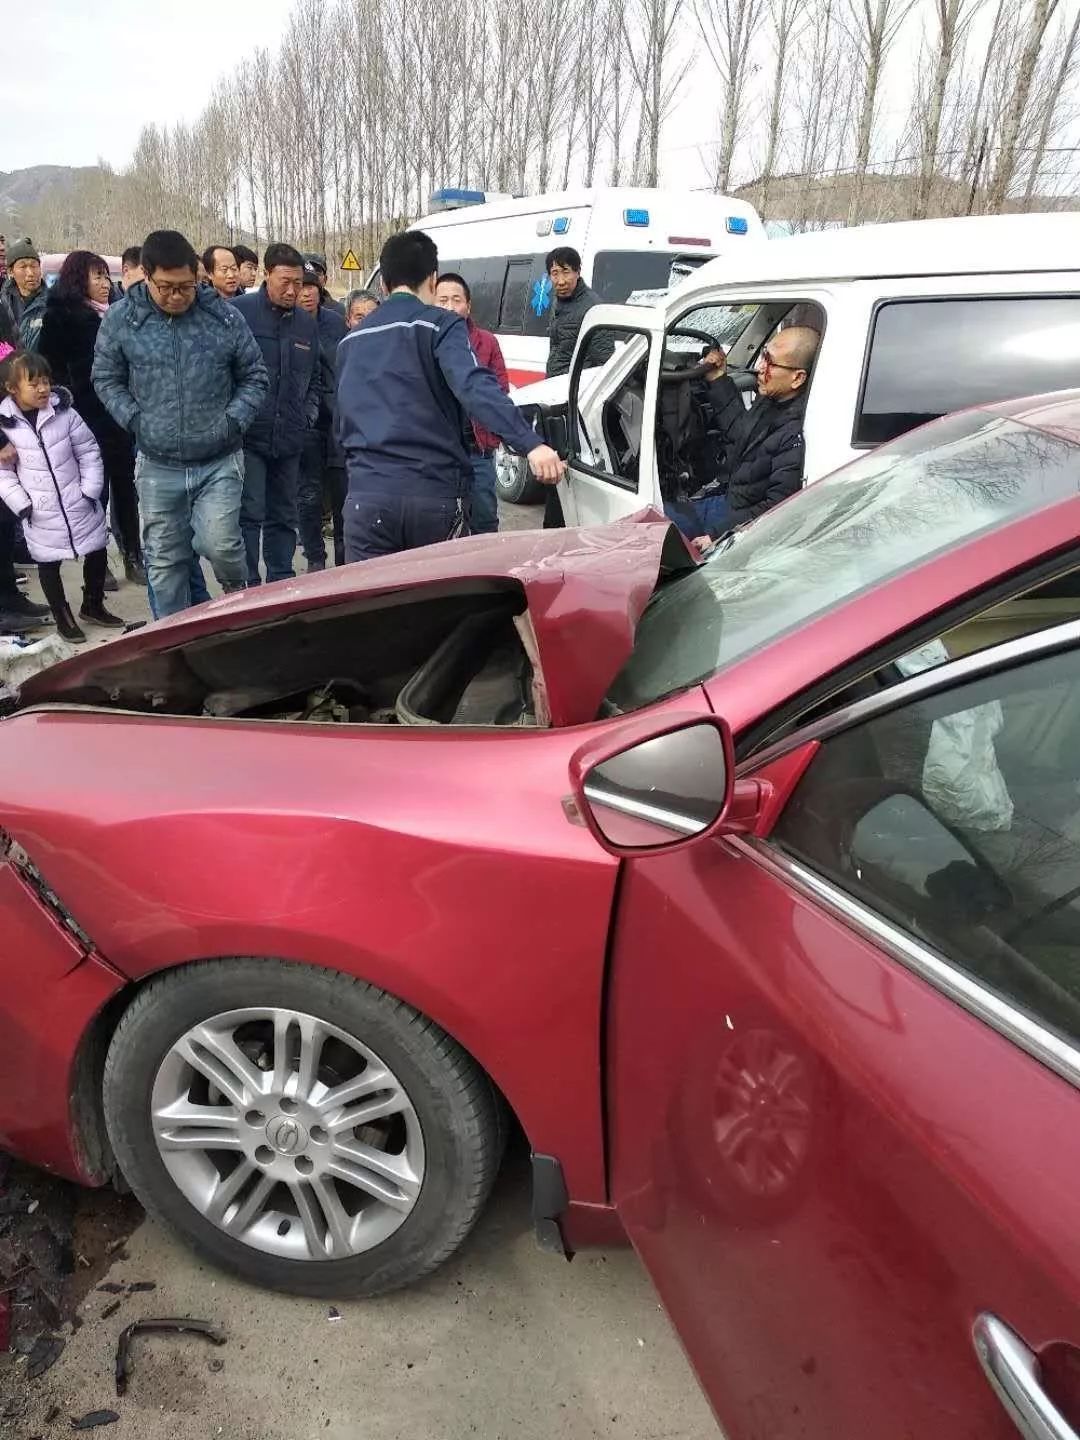 事故一现场照片:1月30日,宁城县五化镇附近发生两起交通事故现场车